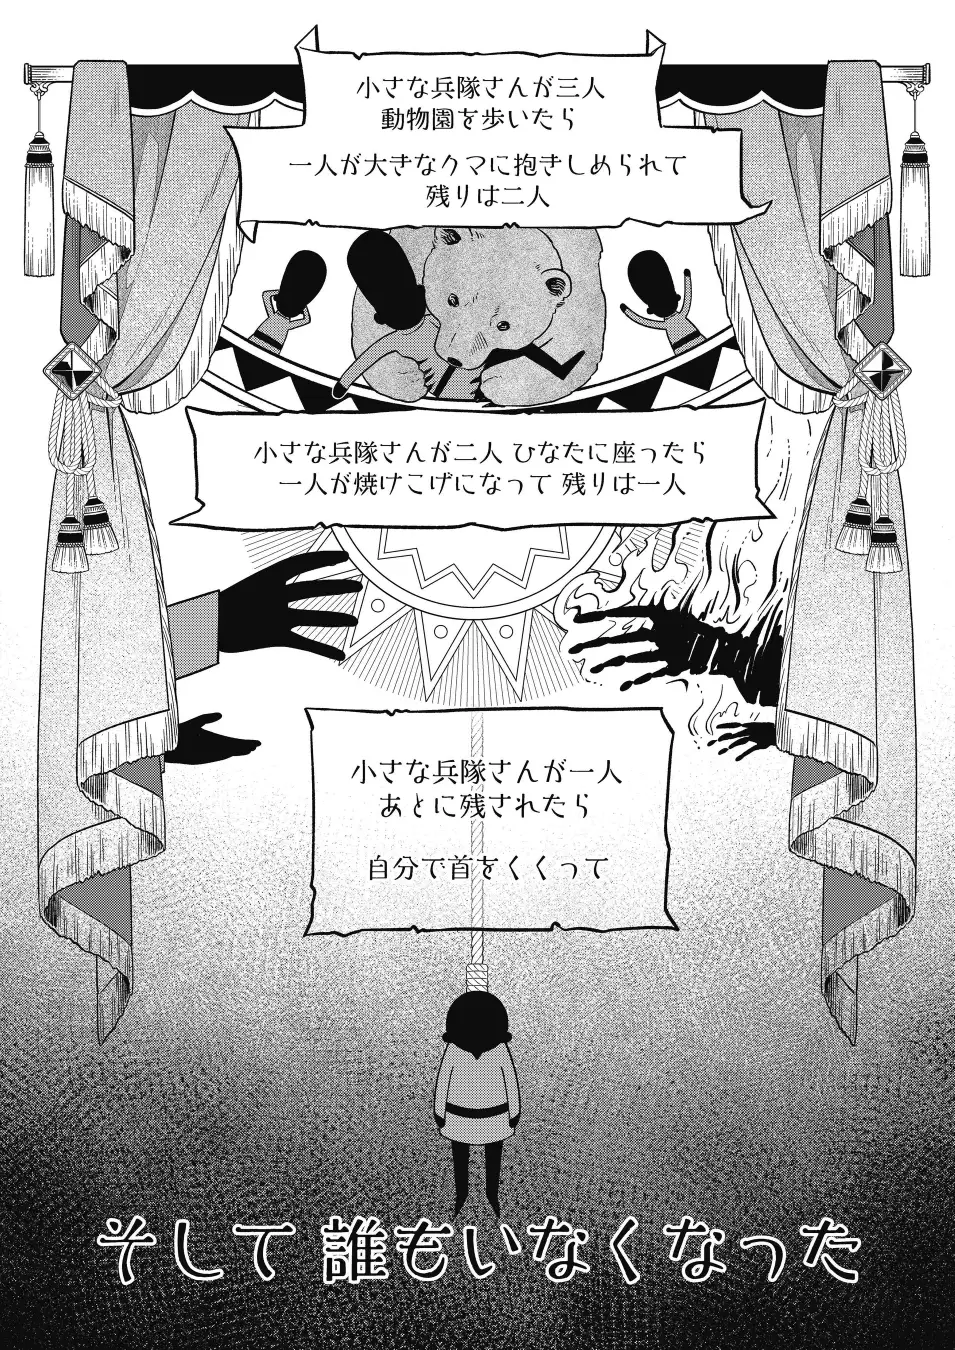 早川書房のコミックサイト「ハヤコミ」が7月23日にオープンへ。『そして誰もいなくなった』など世界の名作小説をコミカライズ_001